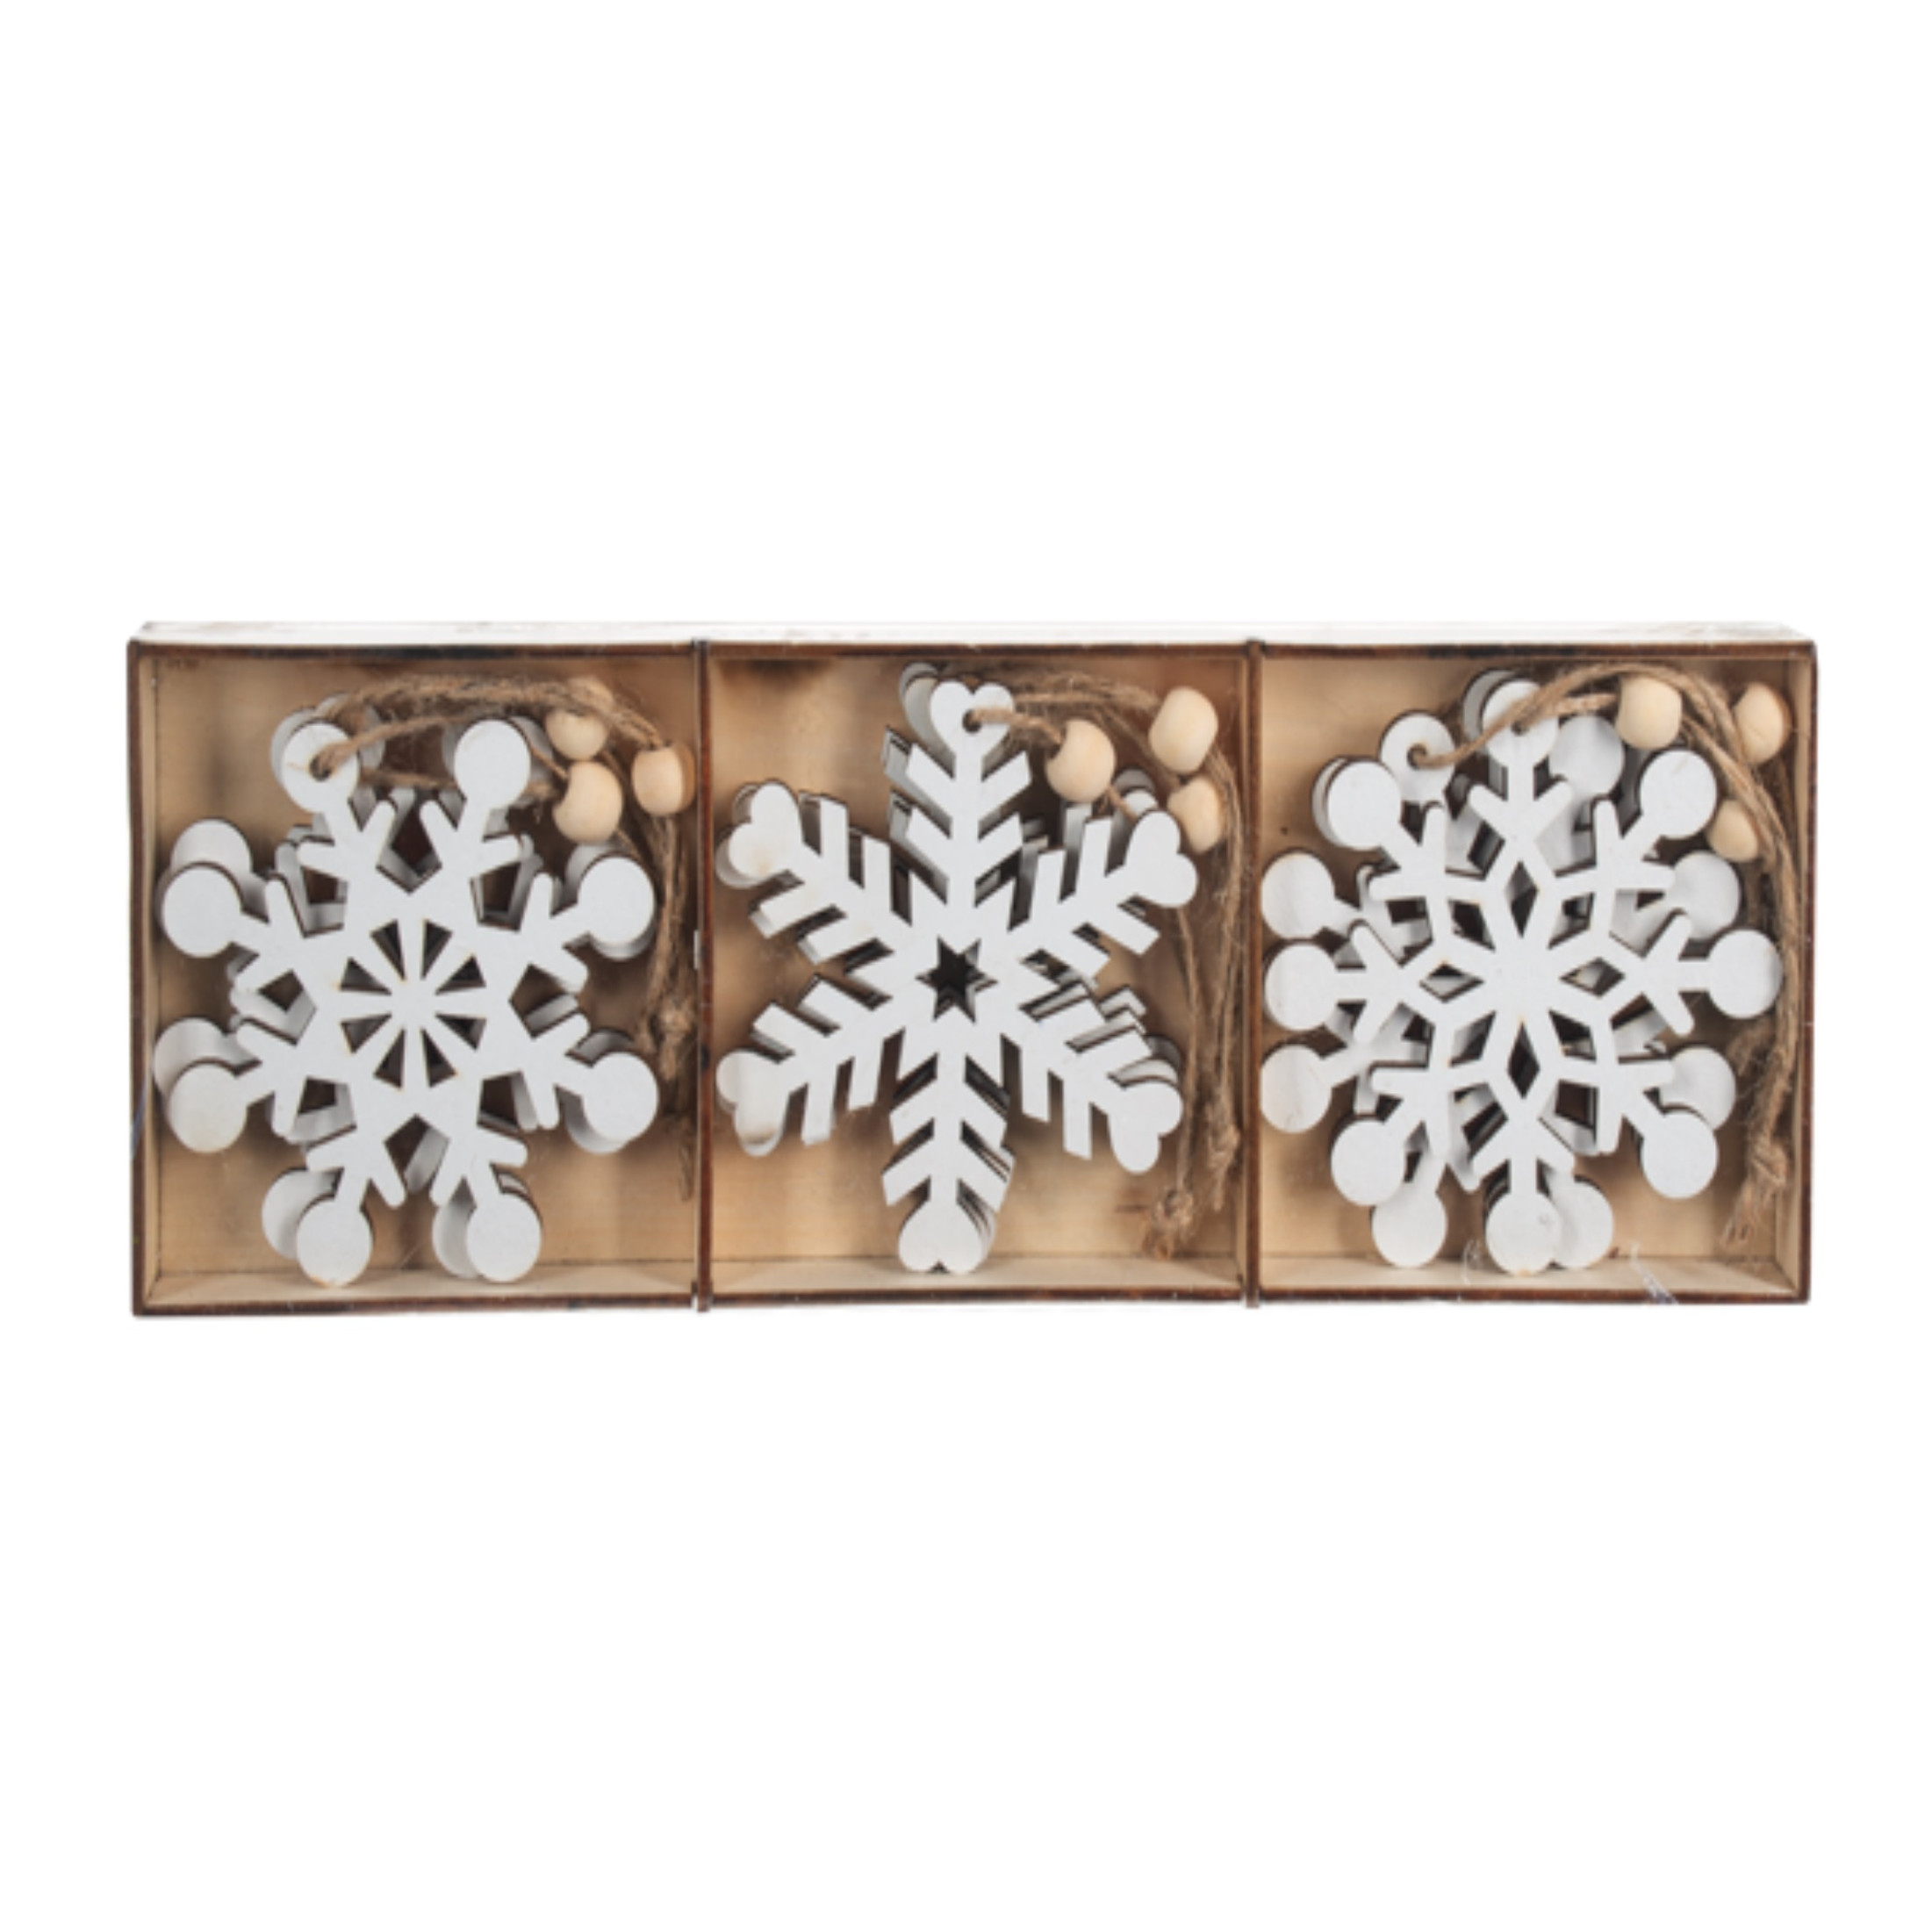 Ganz White Snowflake Ornament Boxed Set, 12-Piece Set